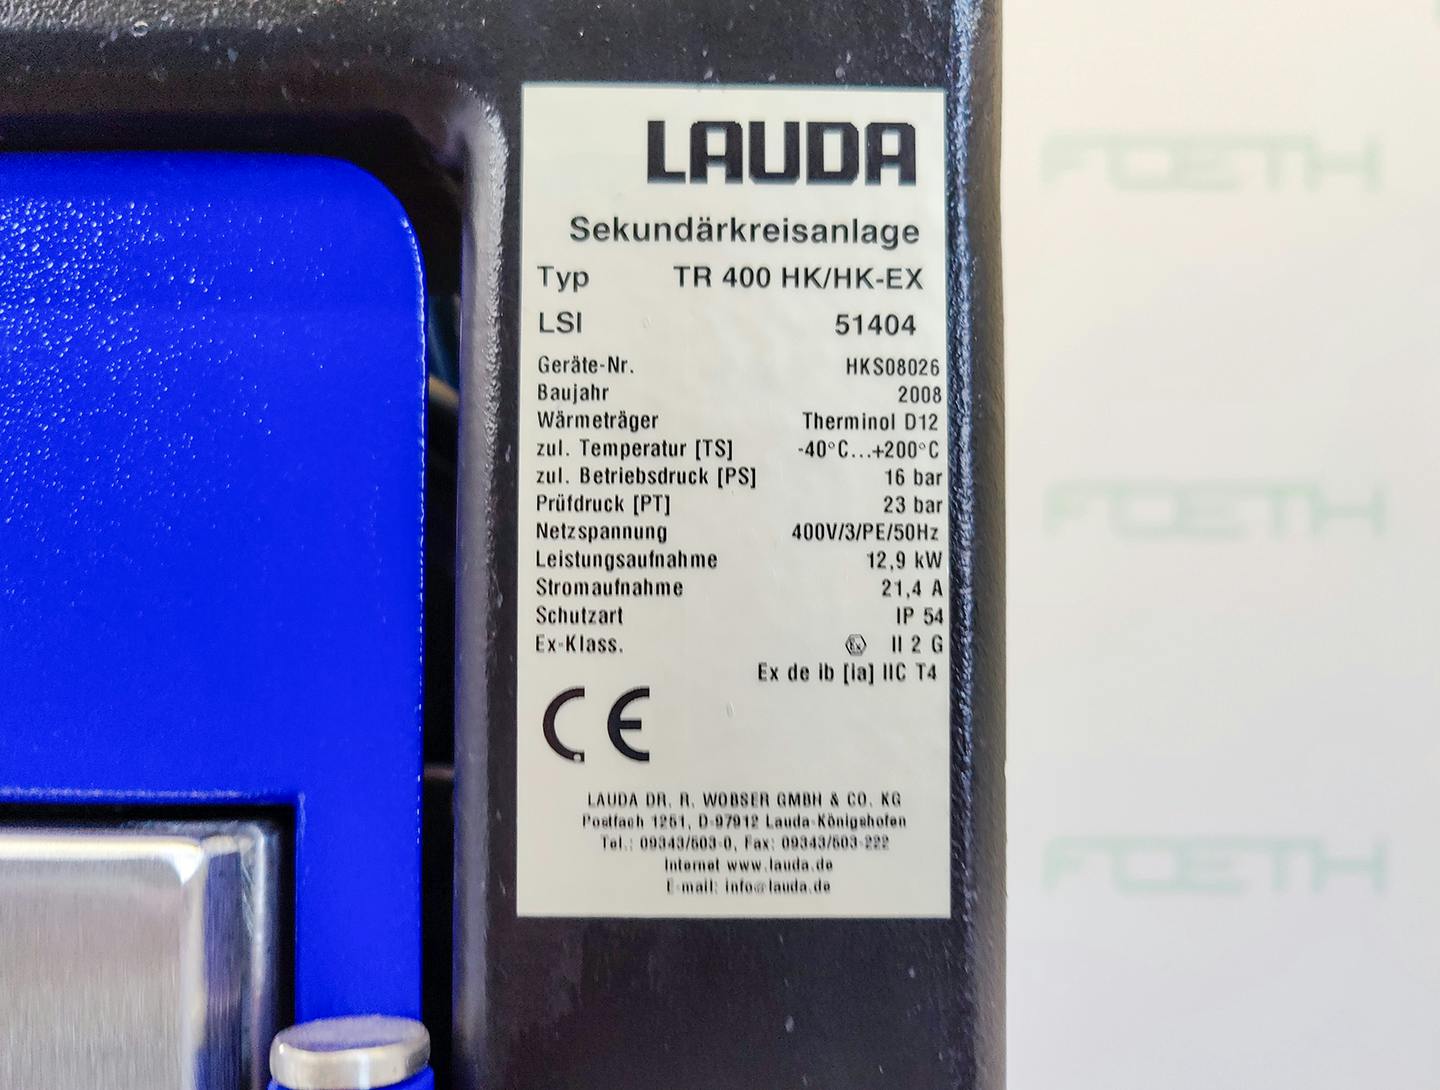 Lauda TR400 HK/HK-EX "secondary circuit system" - Atemperador - image 14